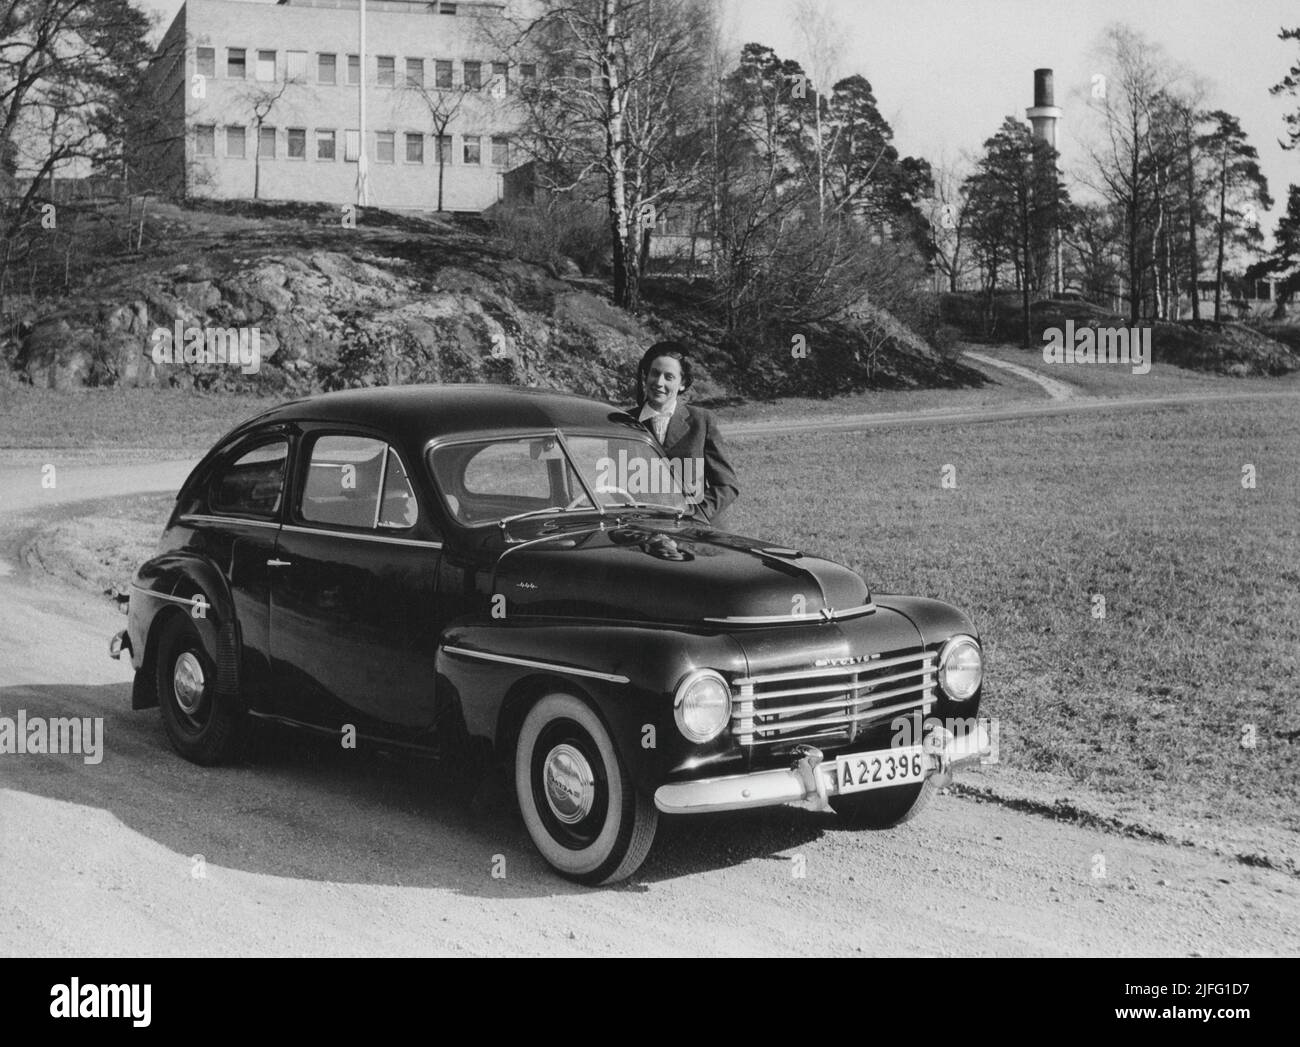 Volvo Auto in der 1950s. Der Volvo PV 444 war eines der beliebtesten Volvo-Fahrzeuge aller Zeiten und war ein Volkwagen der schweden. 196005 Autos wurden hergestellt und es verfügte über einen geräumigen Kofferraum, gute Rostbeständigkeit, die Möglichkeit, das Fahrzeuginnere in ein Bett und Volvo-Service zu verwandeln. Das Bild zeigt einen stolzen Volvo-Besitzer im Jahr 1950s. Stockfoto